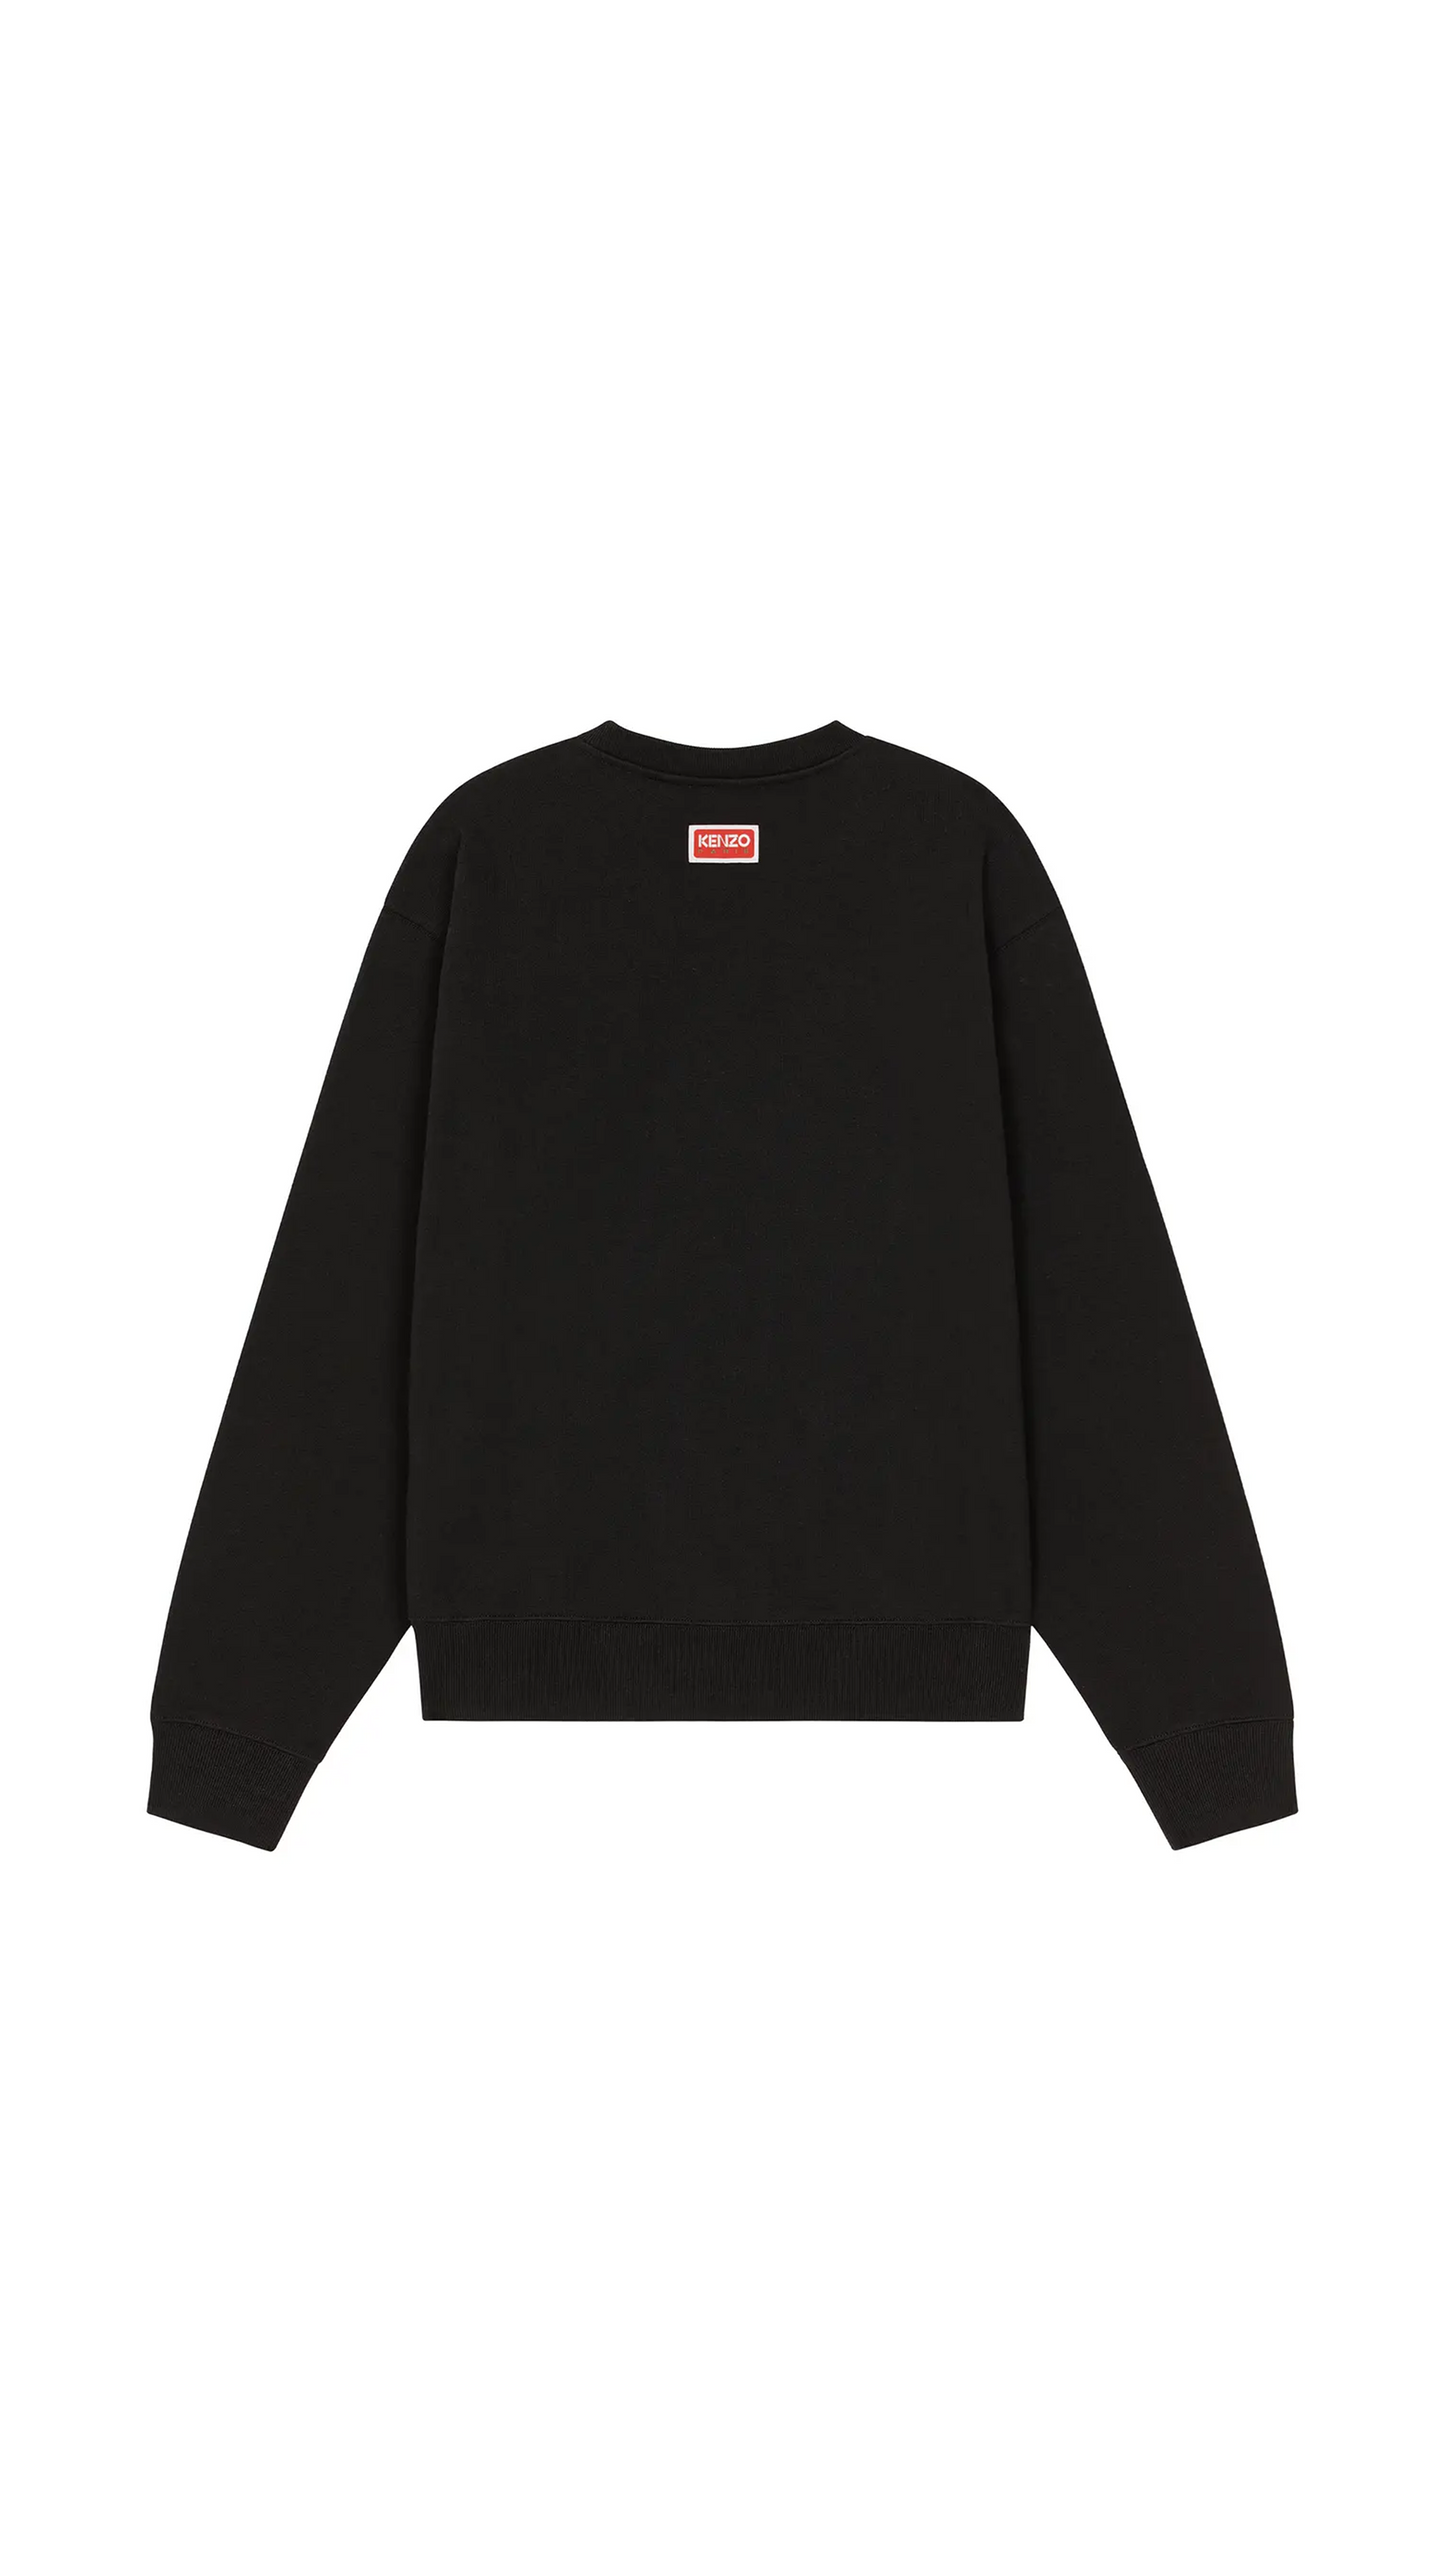 'Boke Flower' Sweatshirt - Black